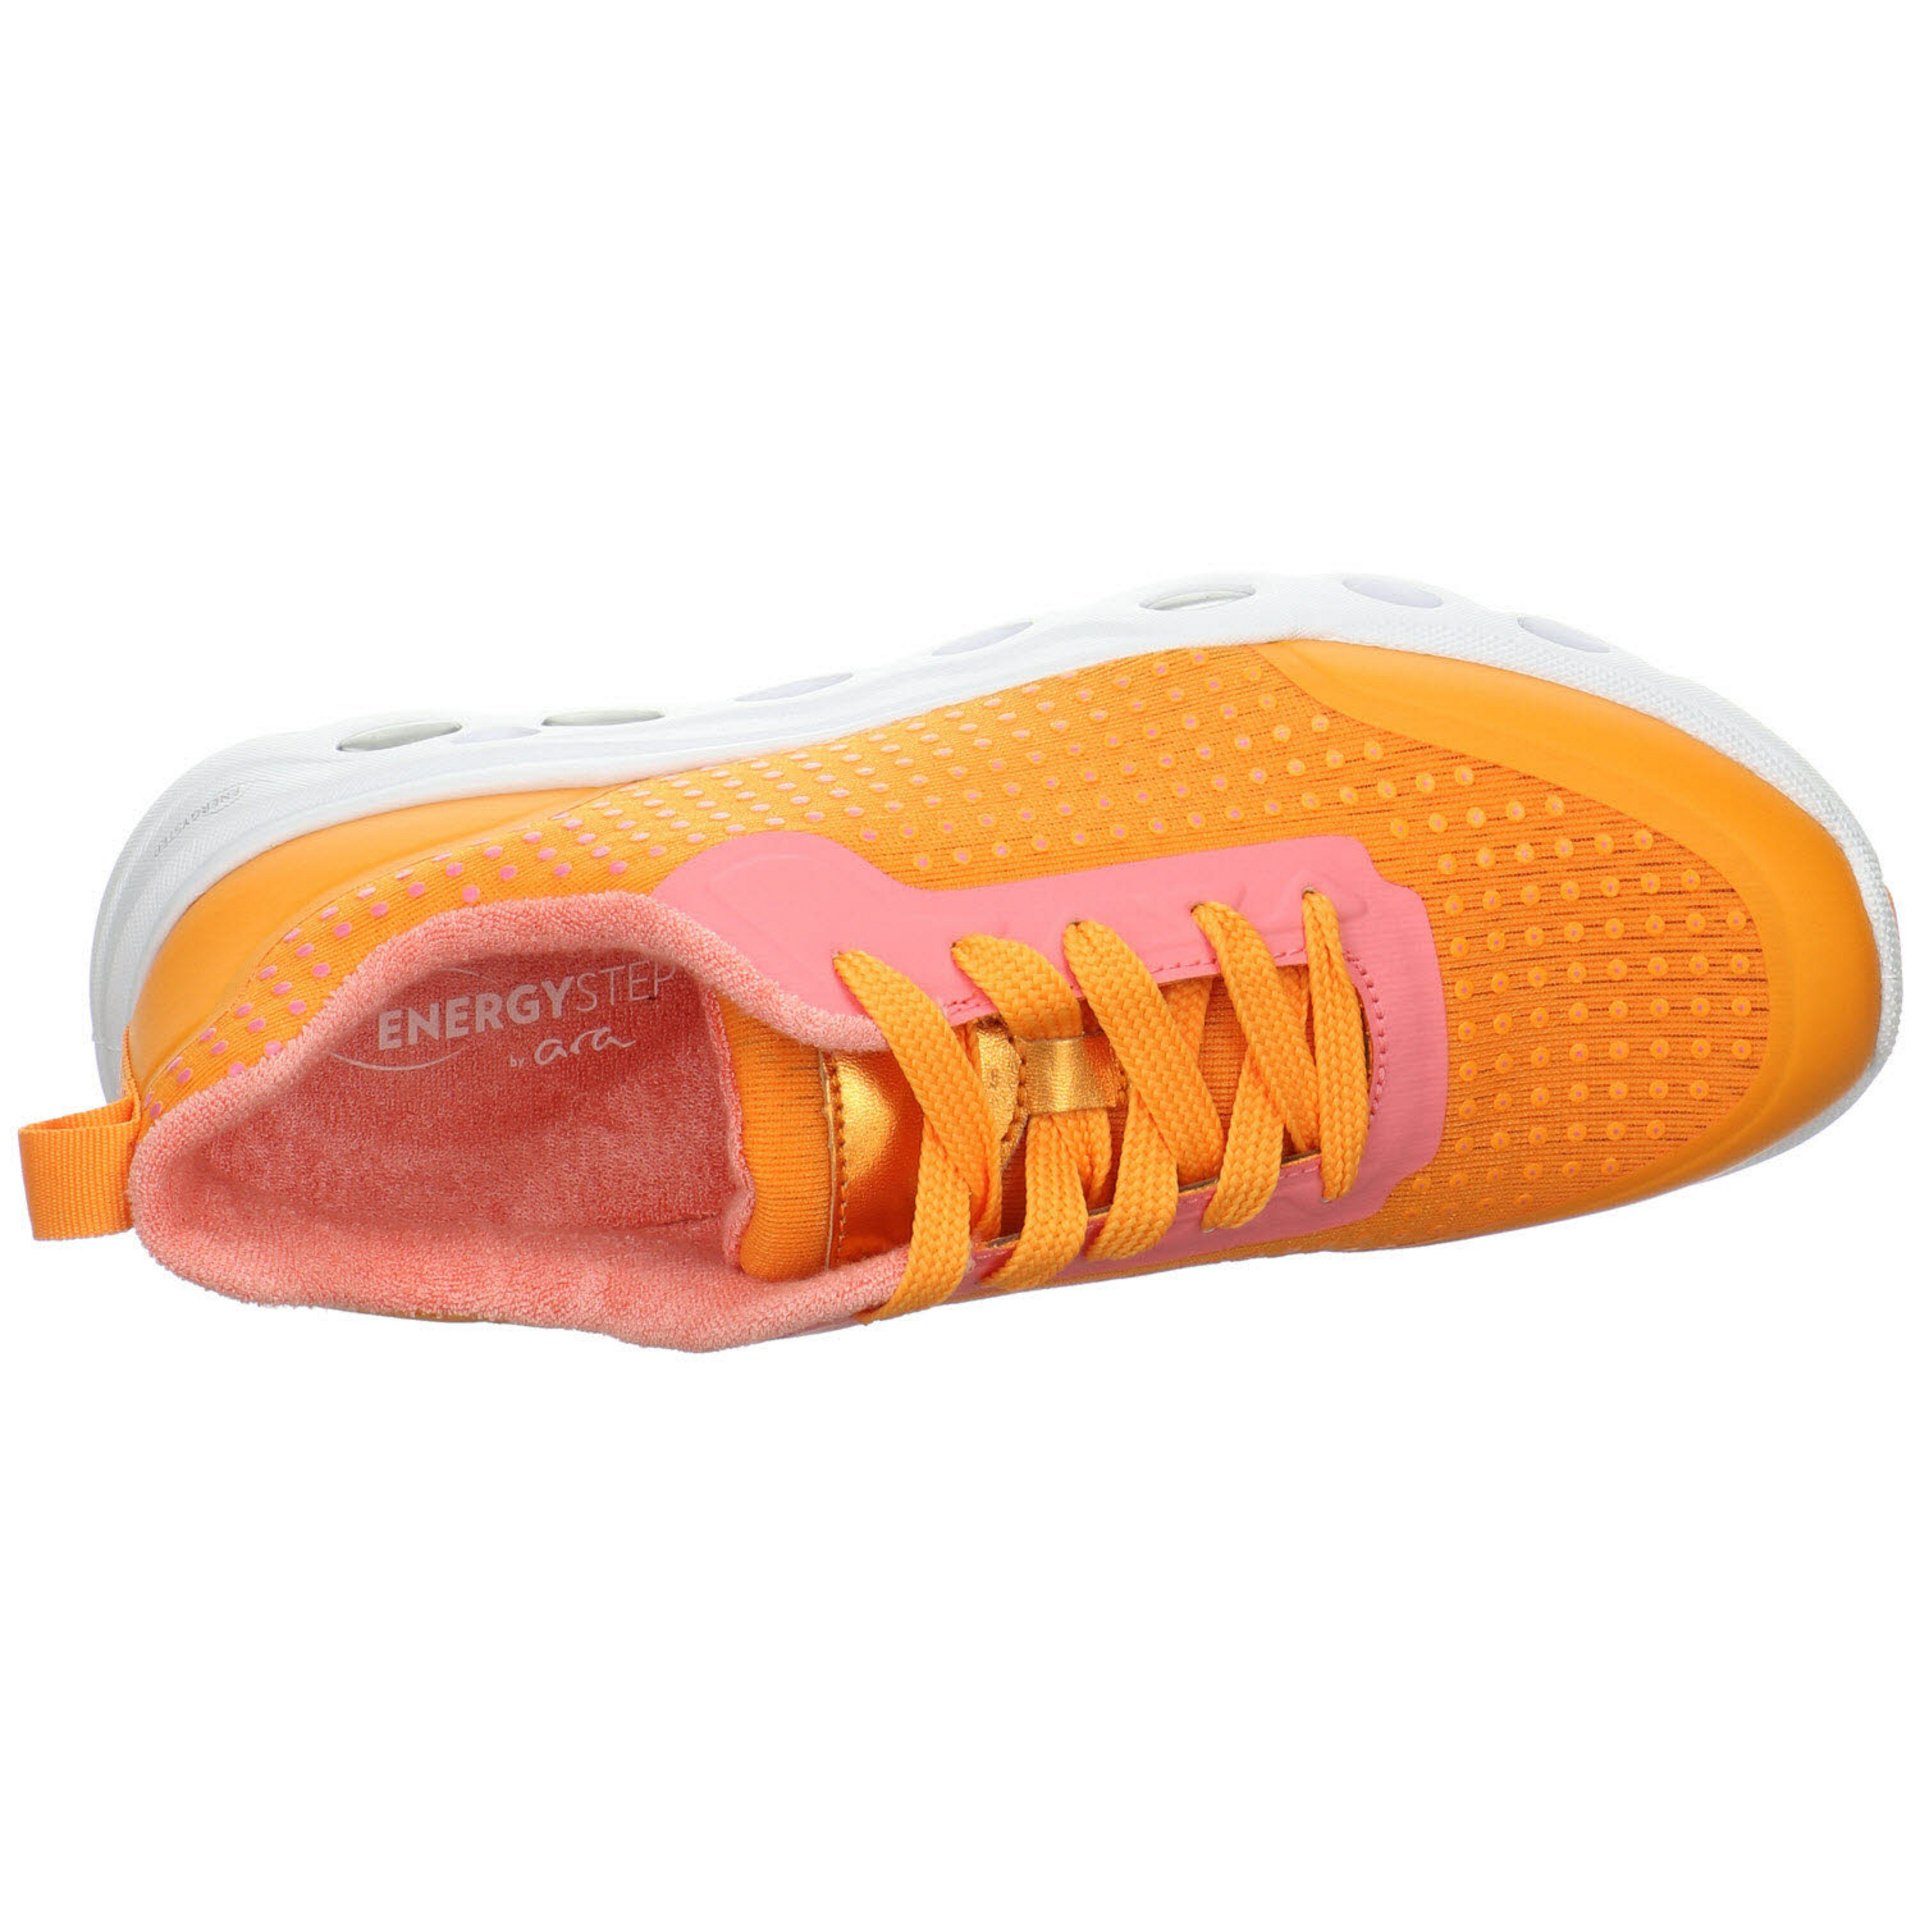 Ara Damen Sneaker Schuhe Malibu Schnürschuh Sneaker orange Synthetikkombination